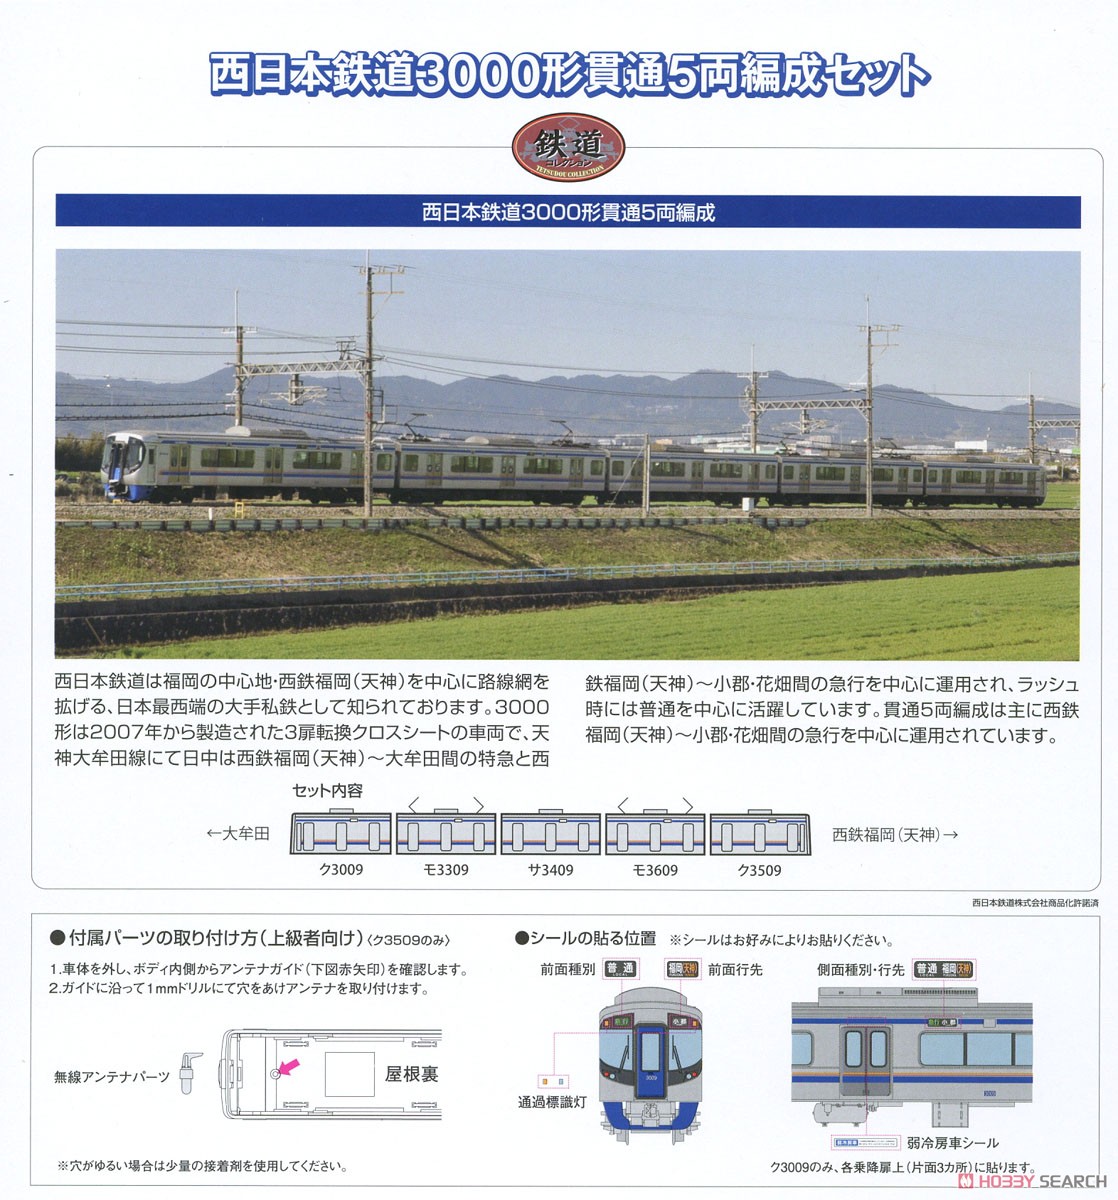 鉄道コレクション 西日本鉄道 3000形 貫通5両編成セット (5両セット) (鉄道模型) 解説1